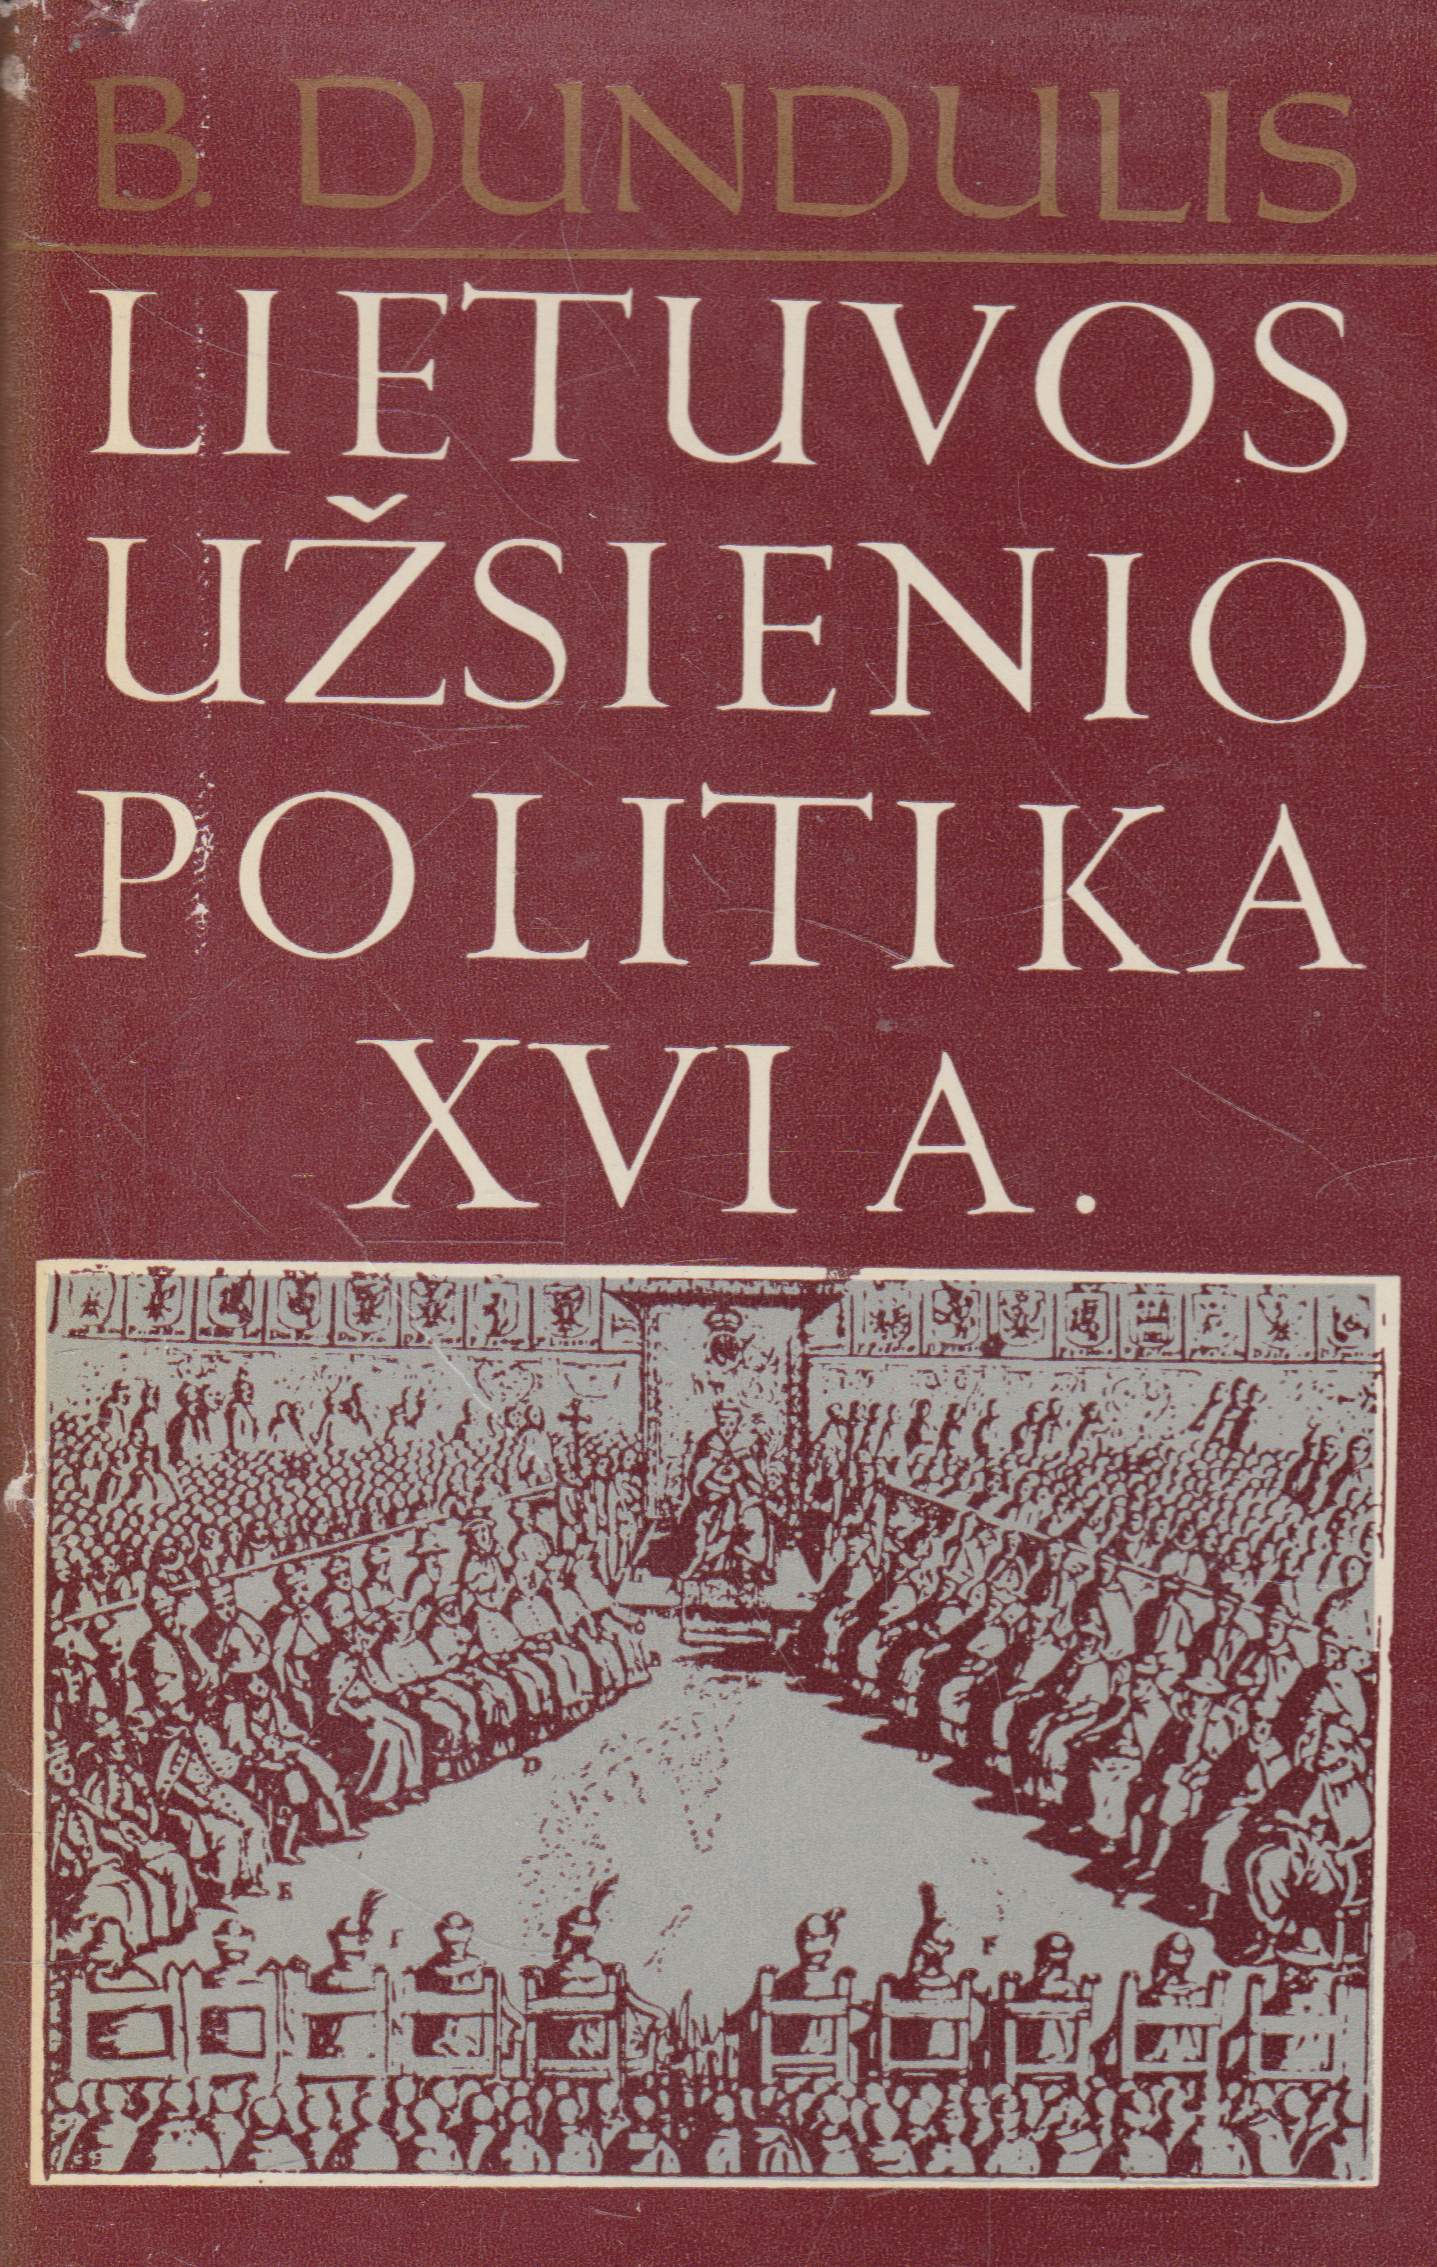 B. Dundulis - Lietuvos užsienio politika XVI a.